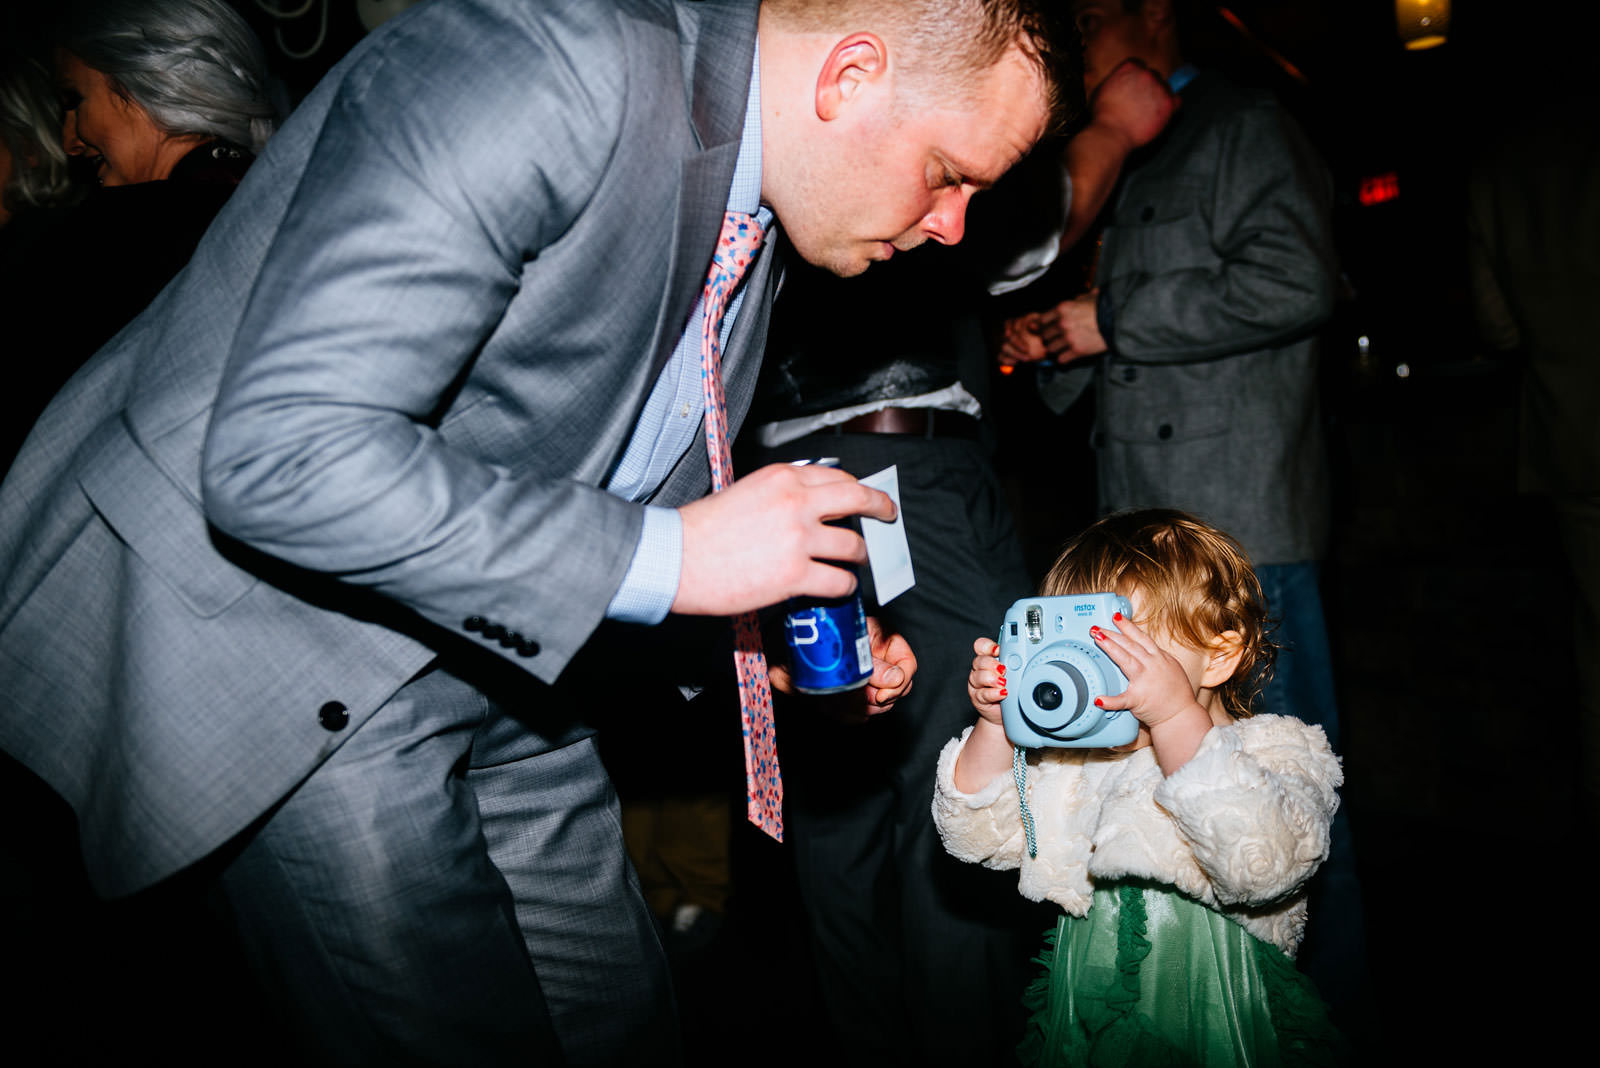 kid using instax camera at wedding reception